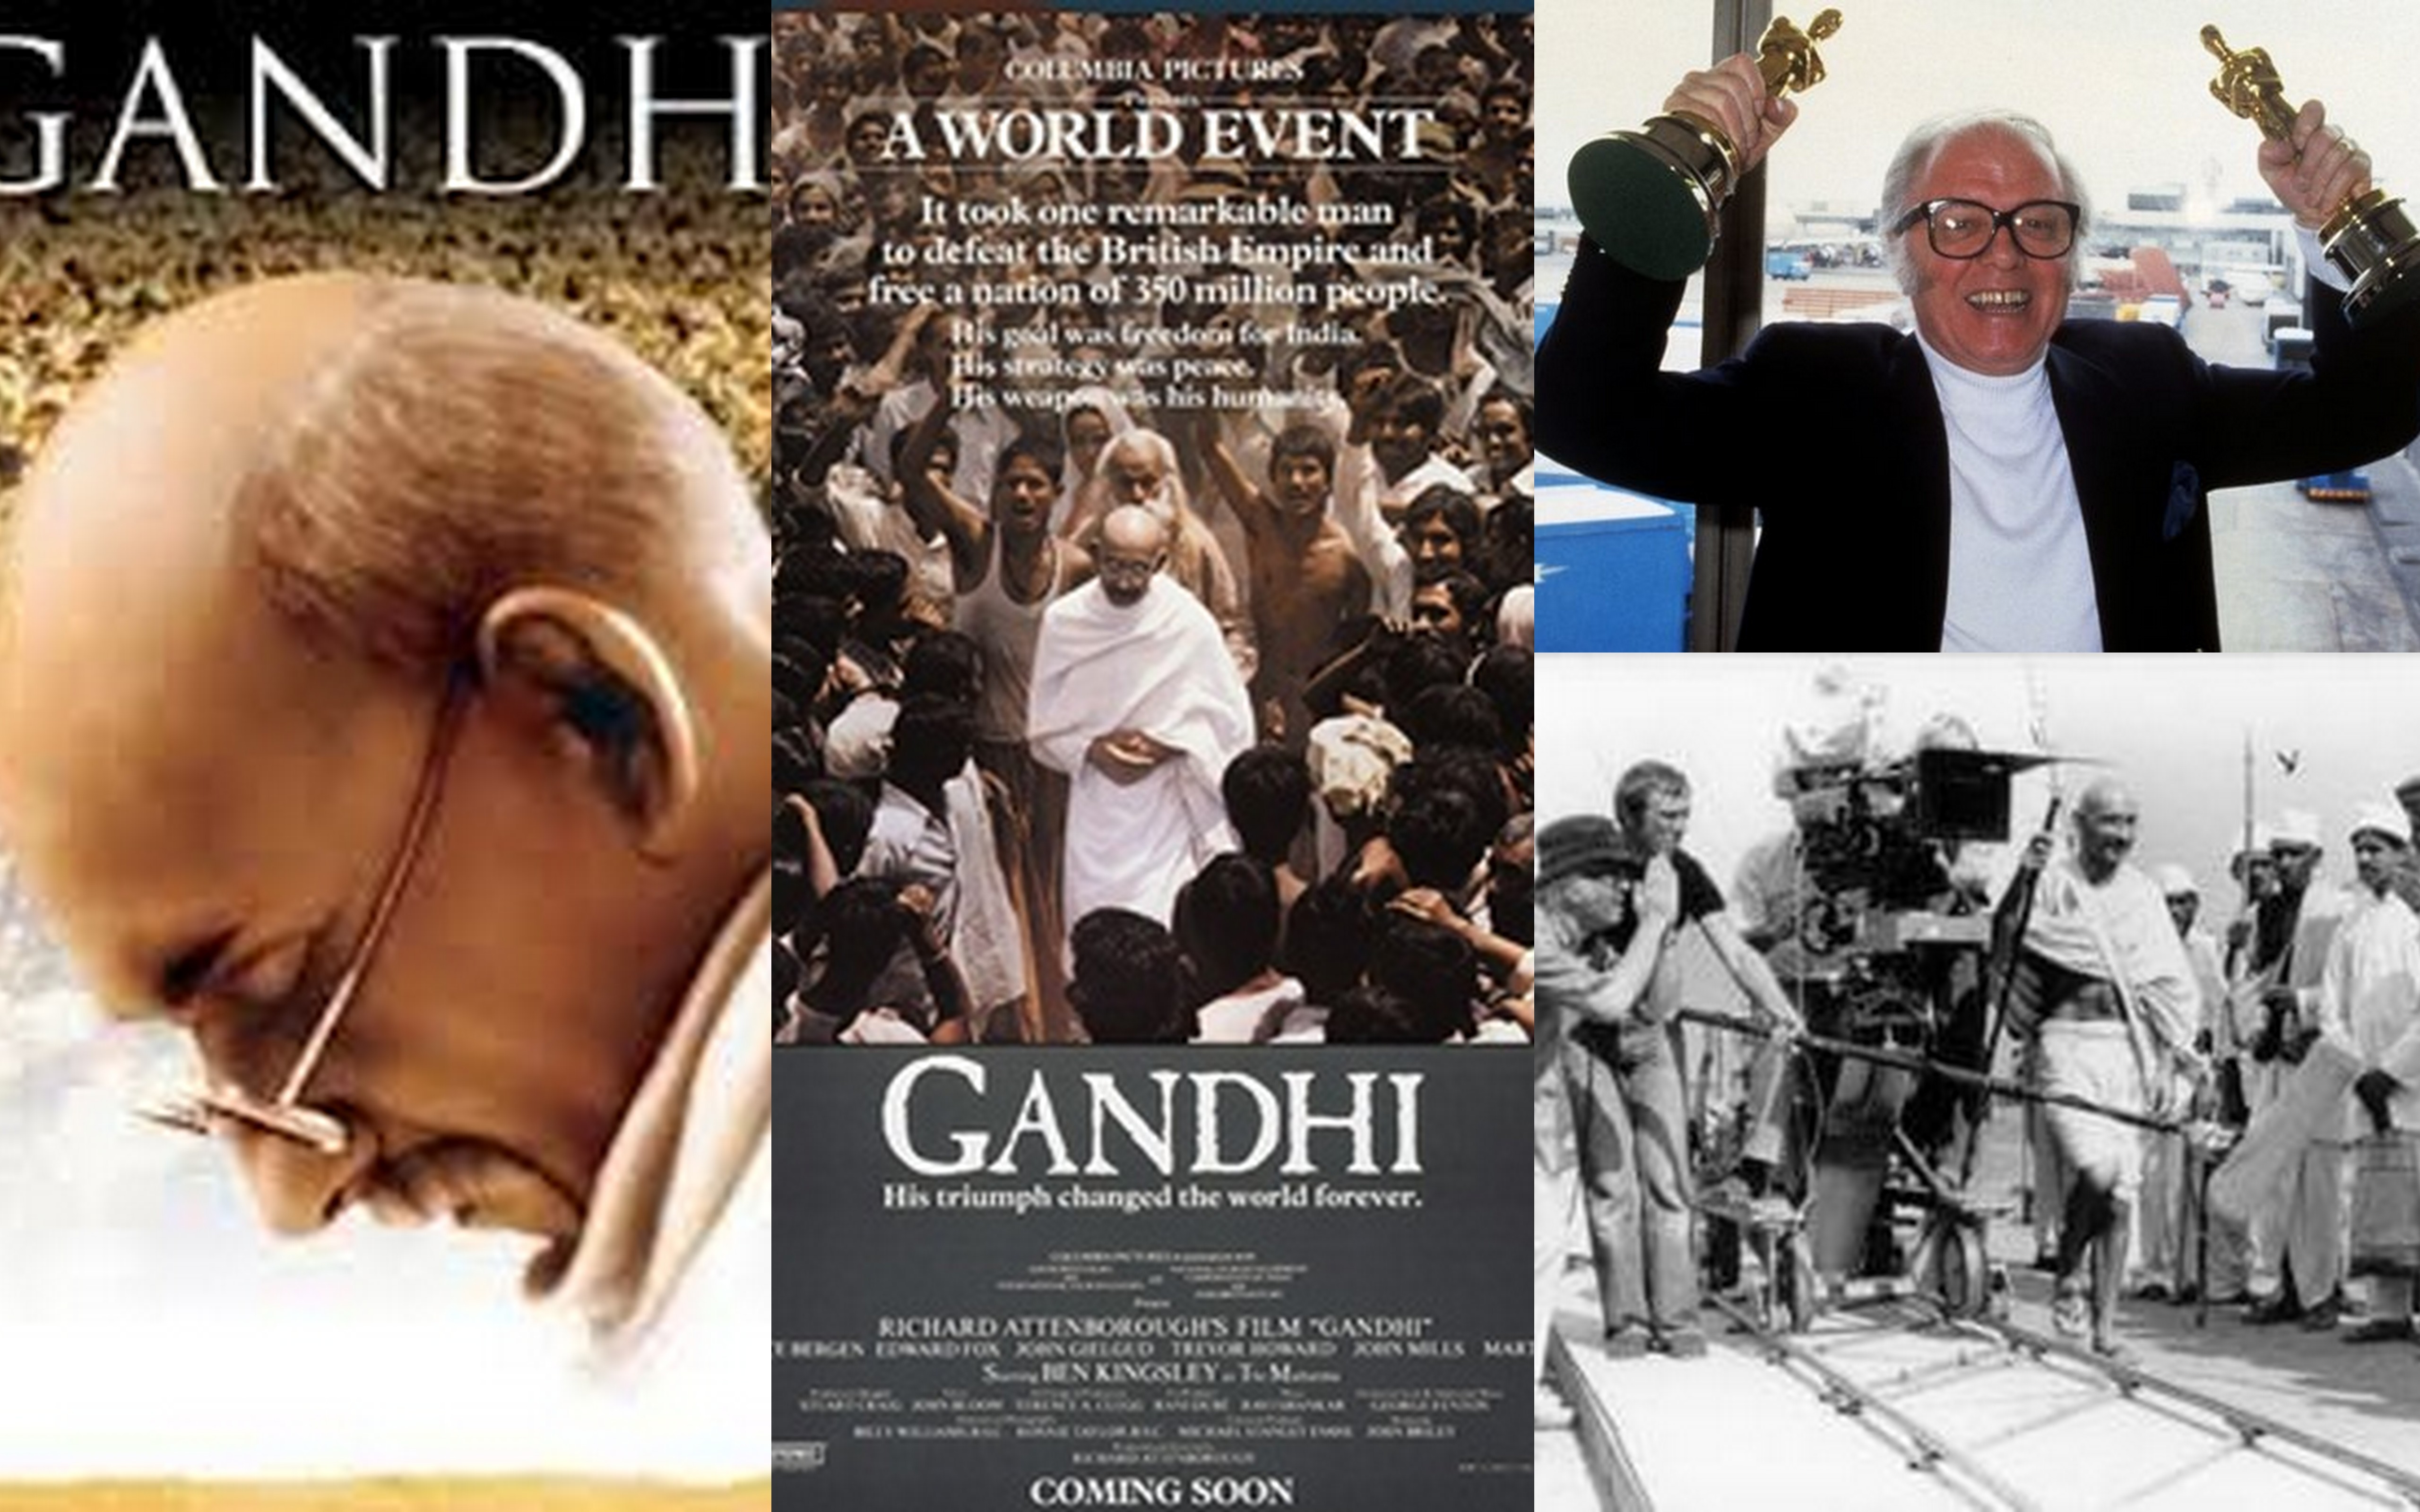 Gandhi le film